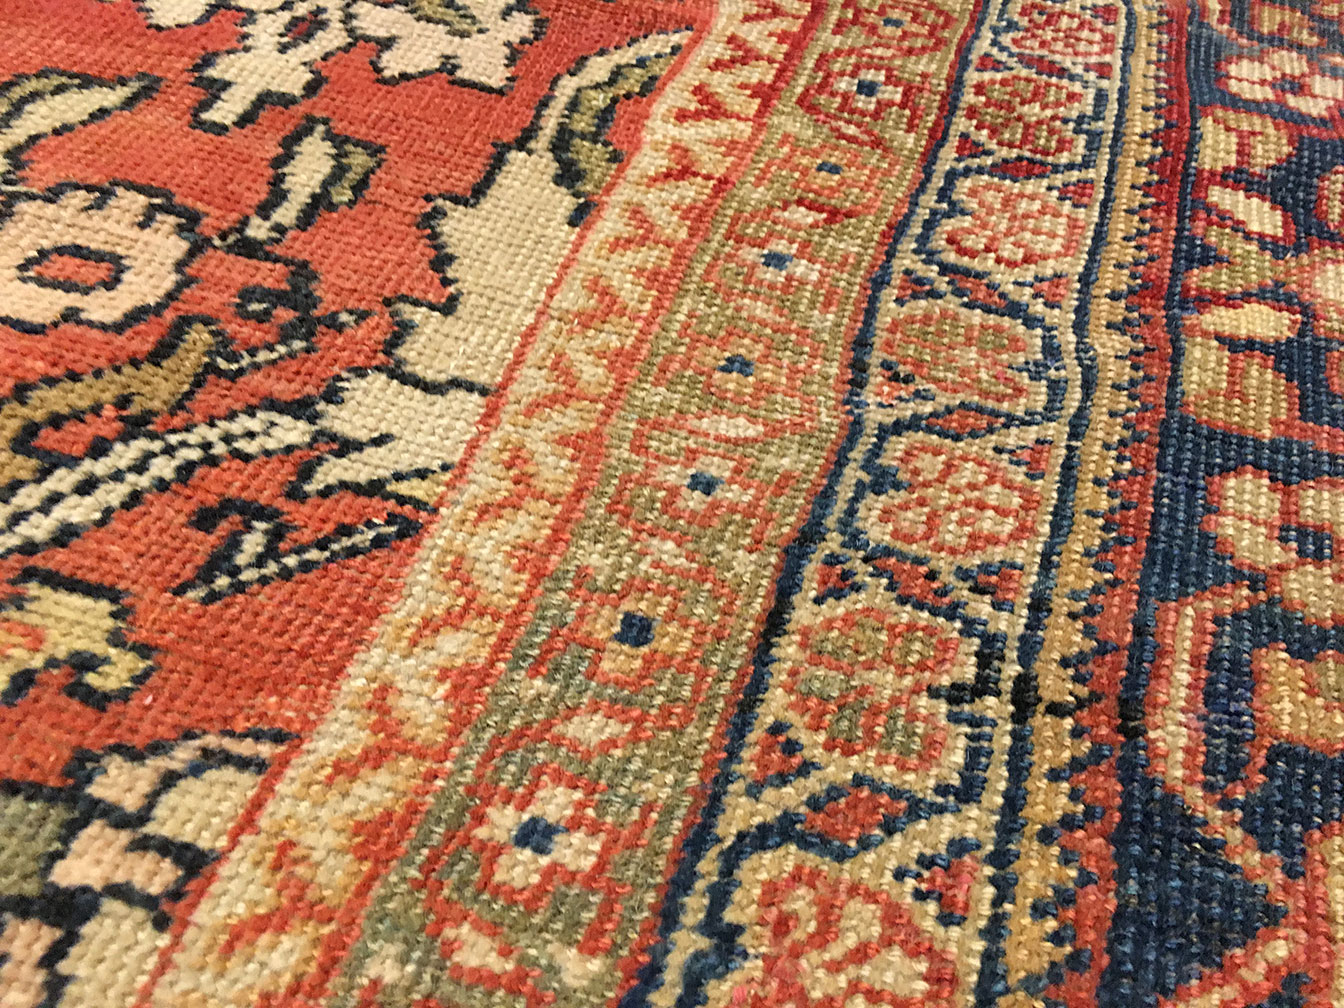 Antique sultan abad Carpet - # 52111